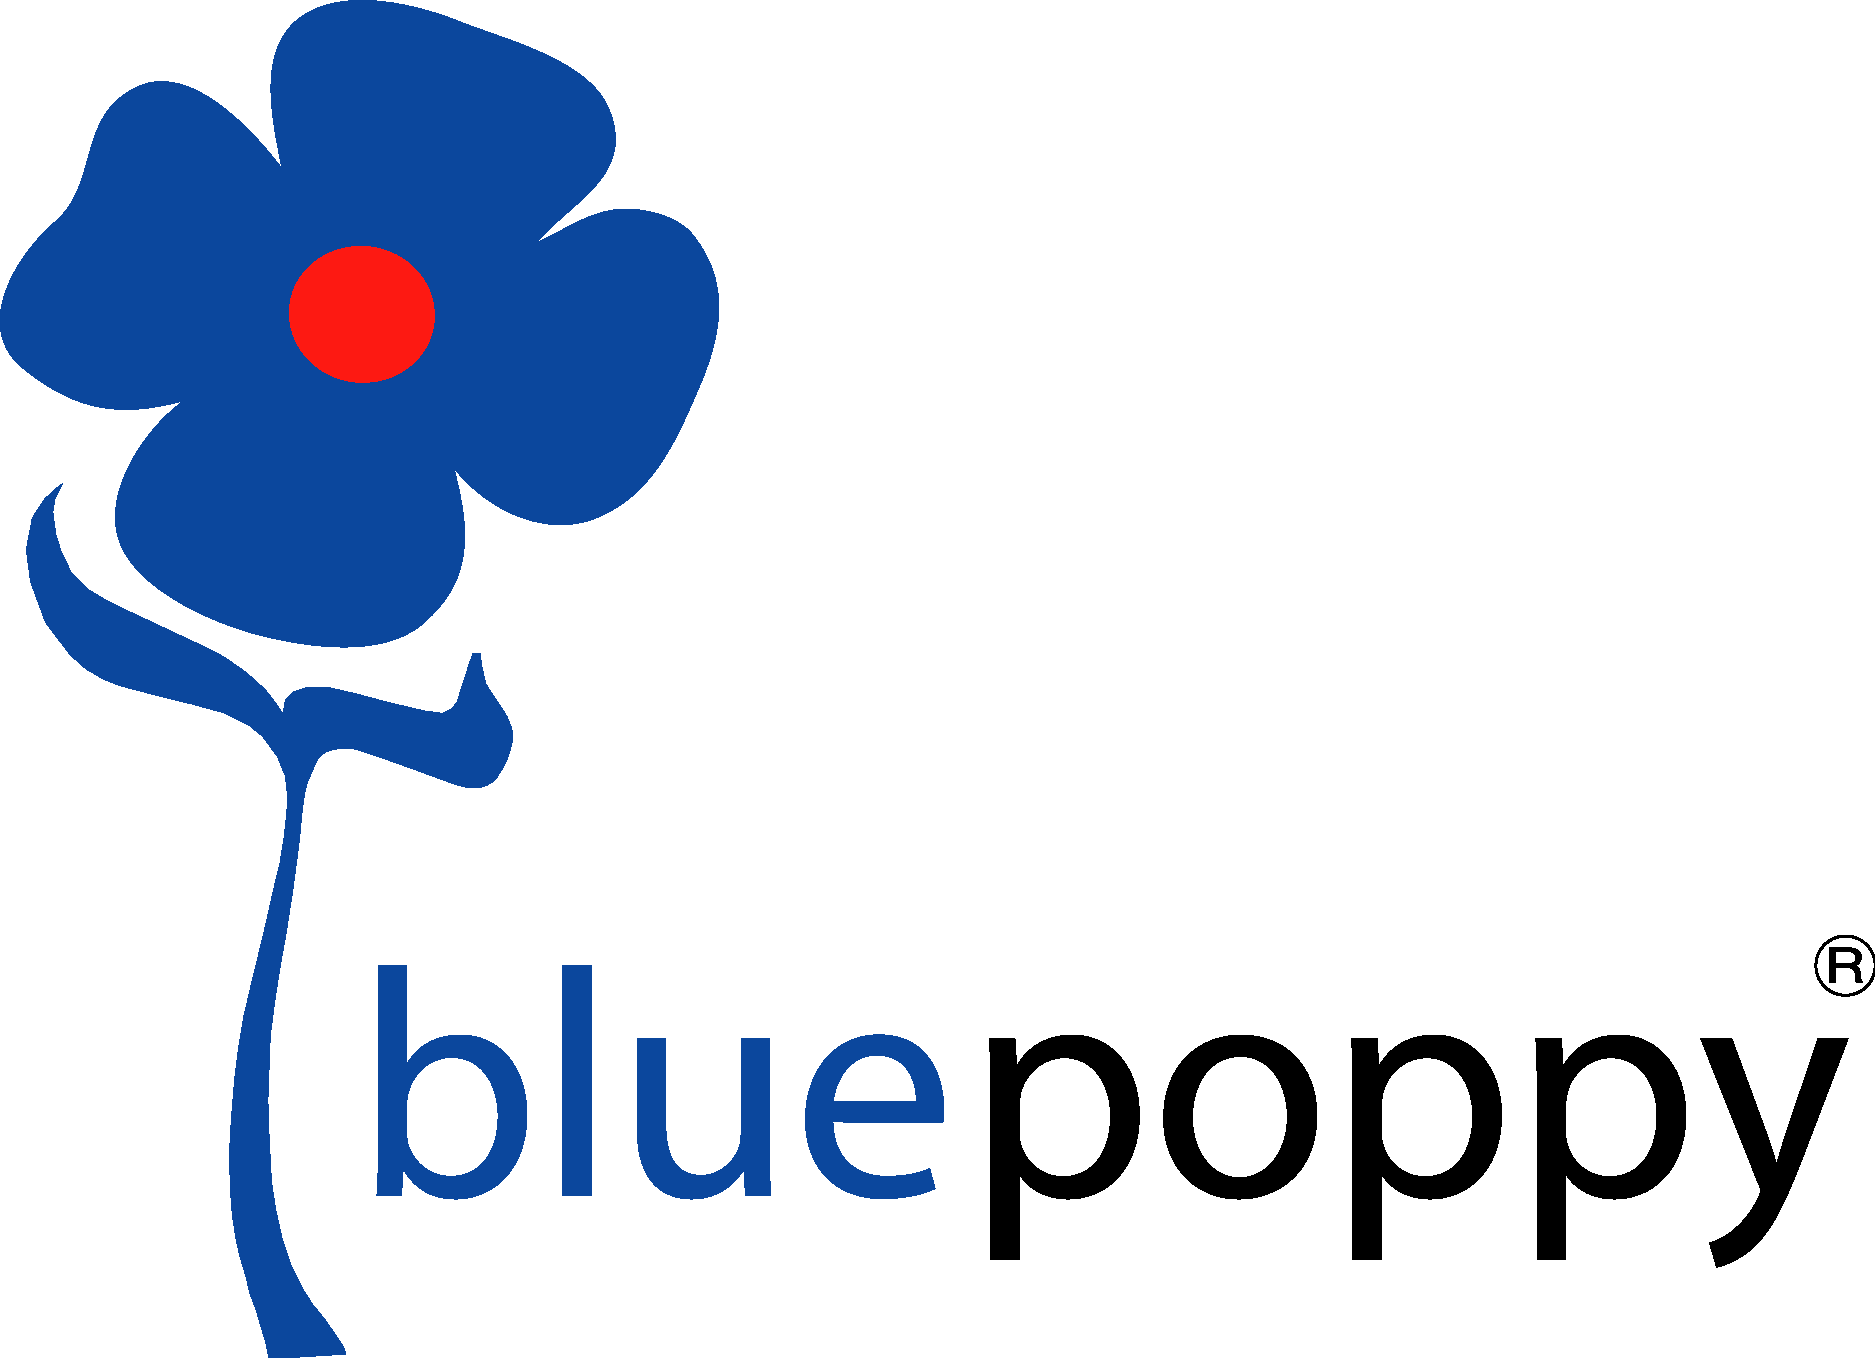 Bluepoppy Logo Vector